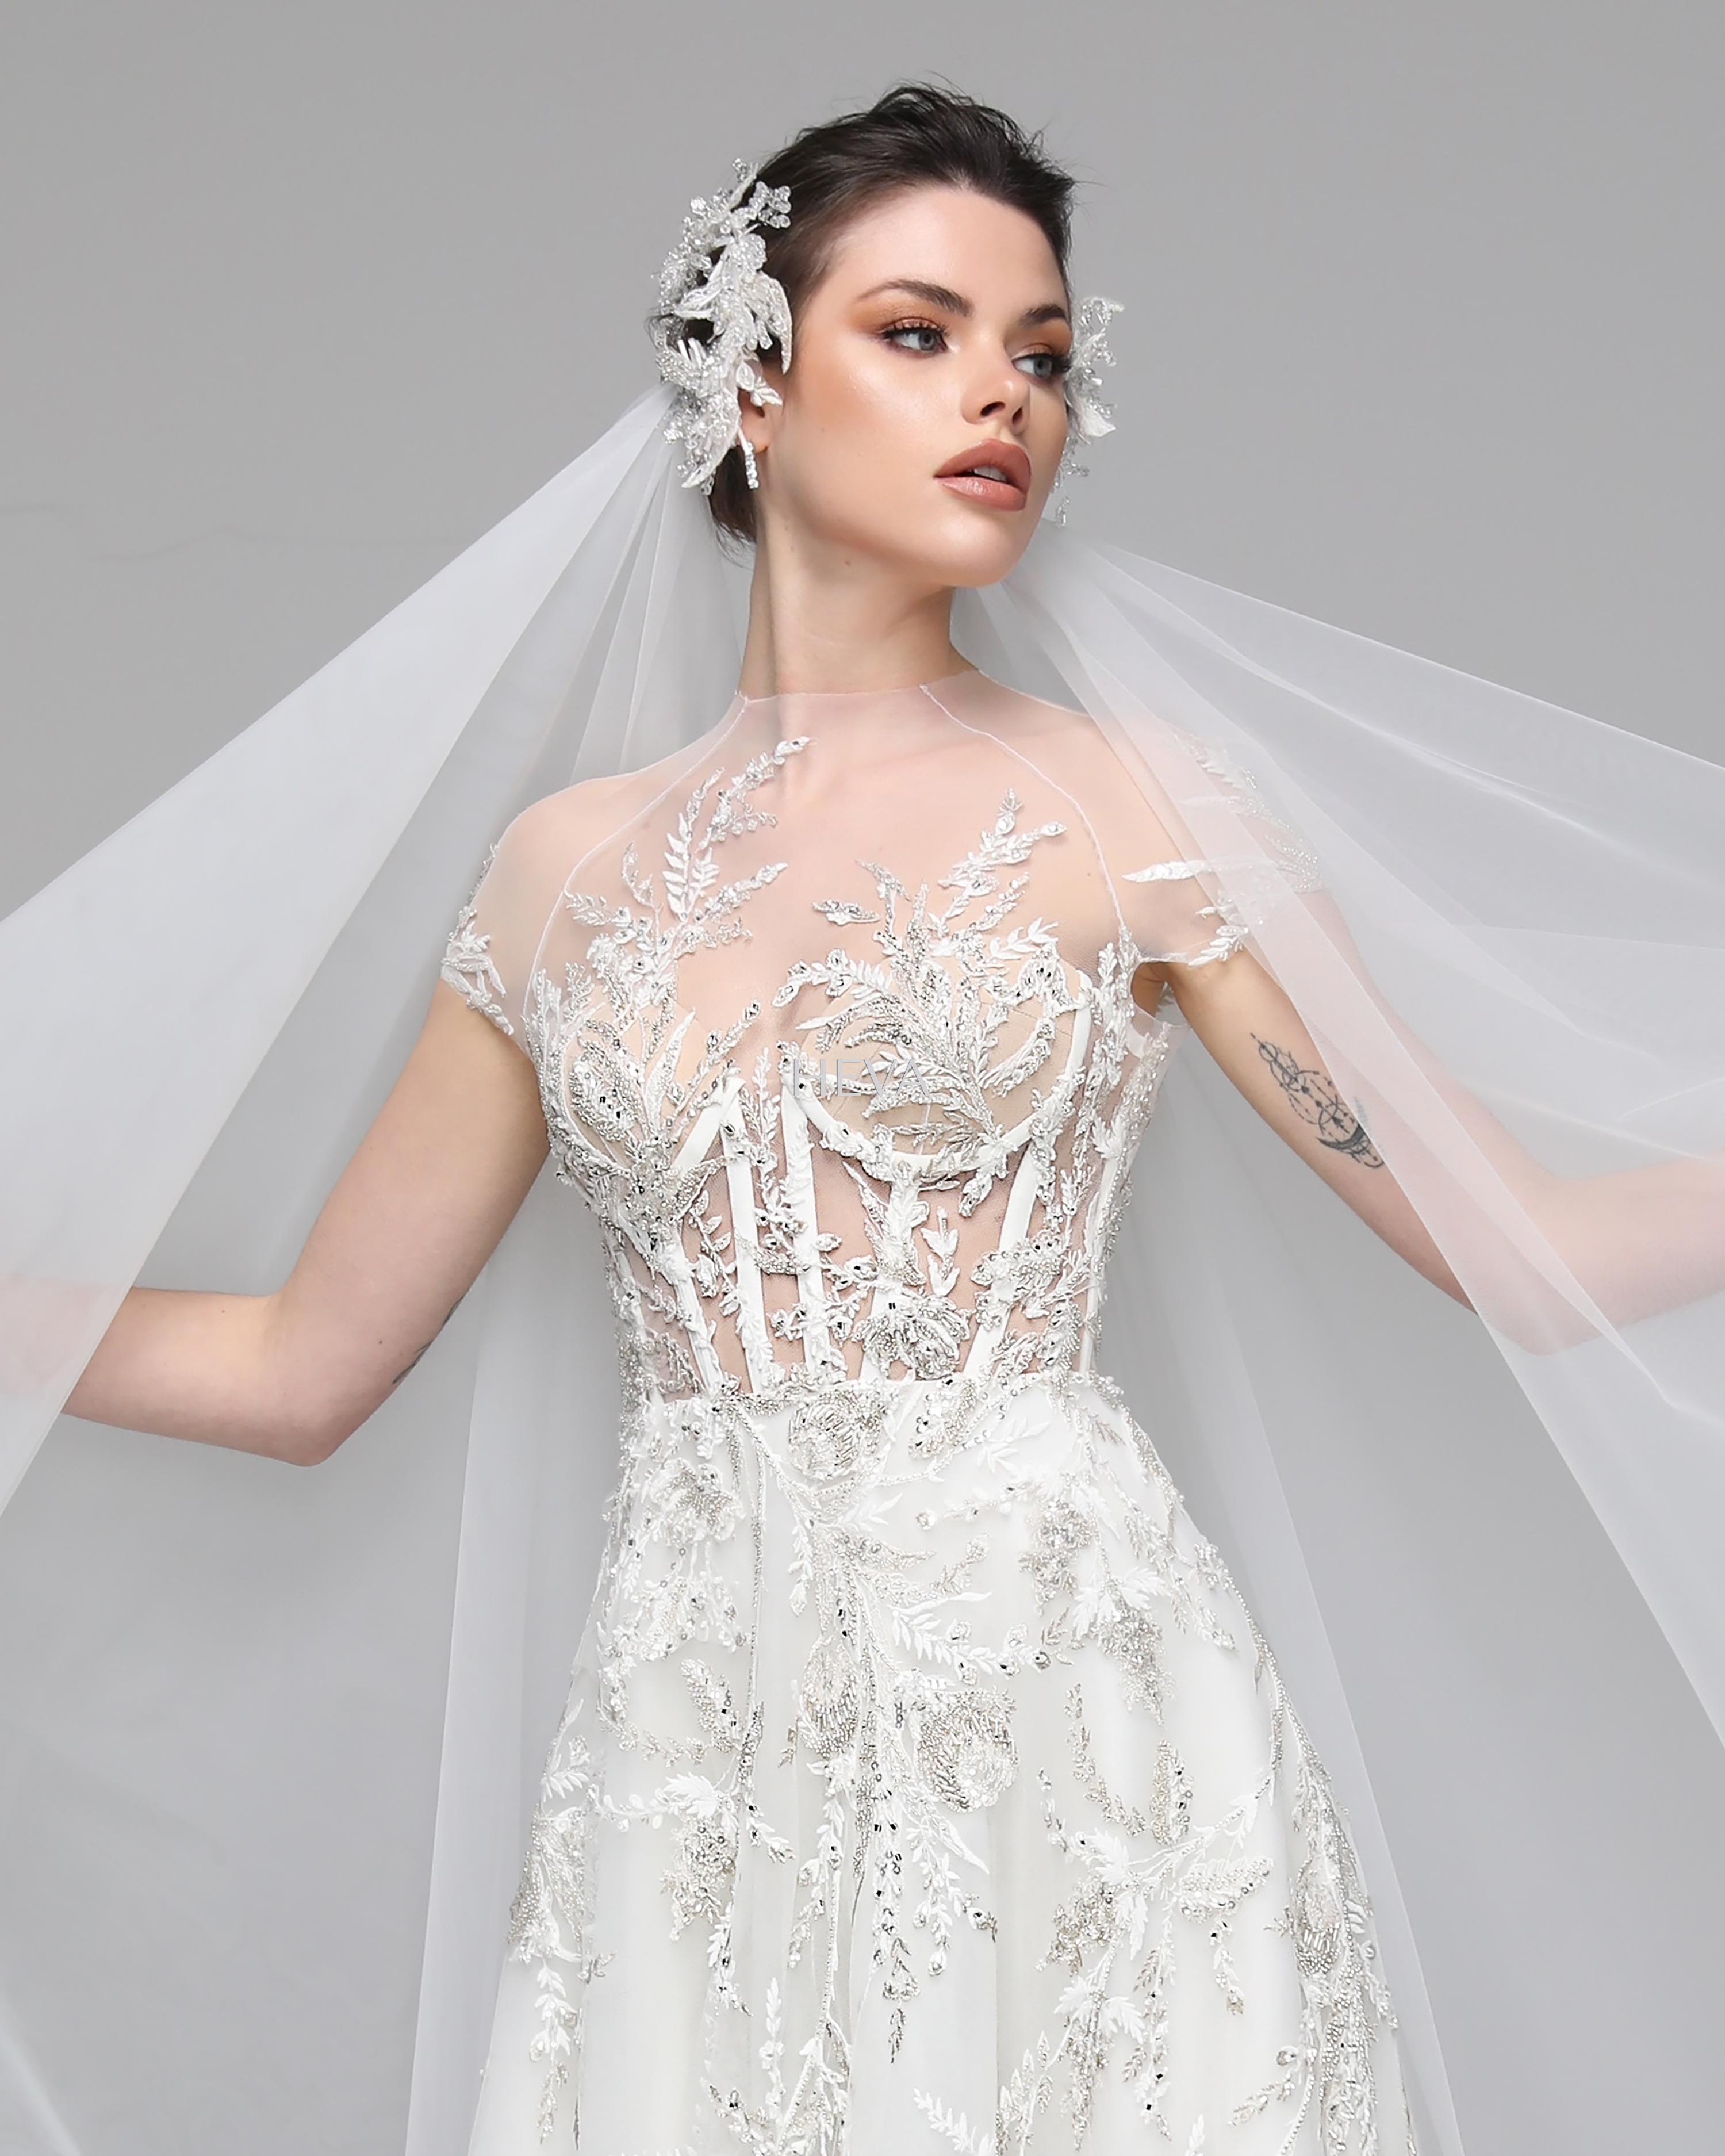 HV22007 - Short-Sleeved, Transparent-Necked, Corset-Bodied, Lightly Frilled Skirt, and Traind with Swarovski Crystal-Embellished Custom-Designed Wedding Gown